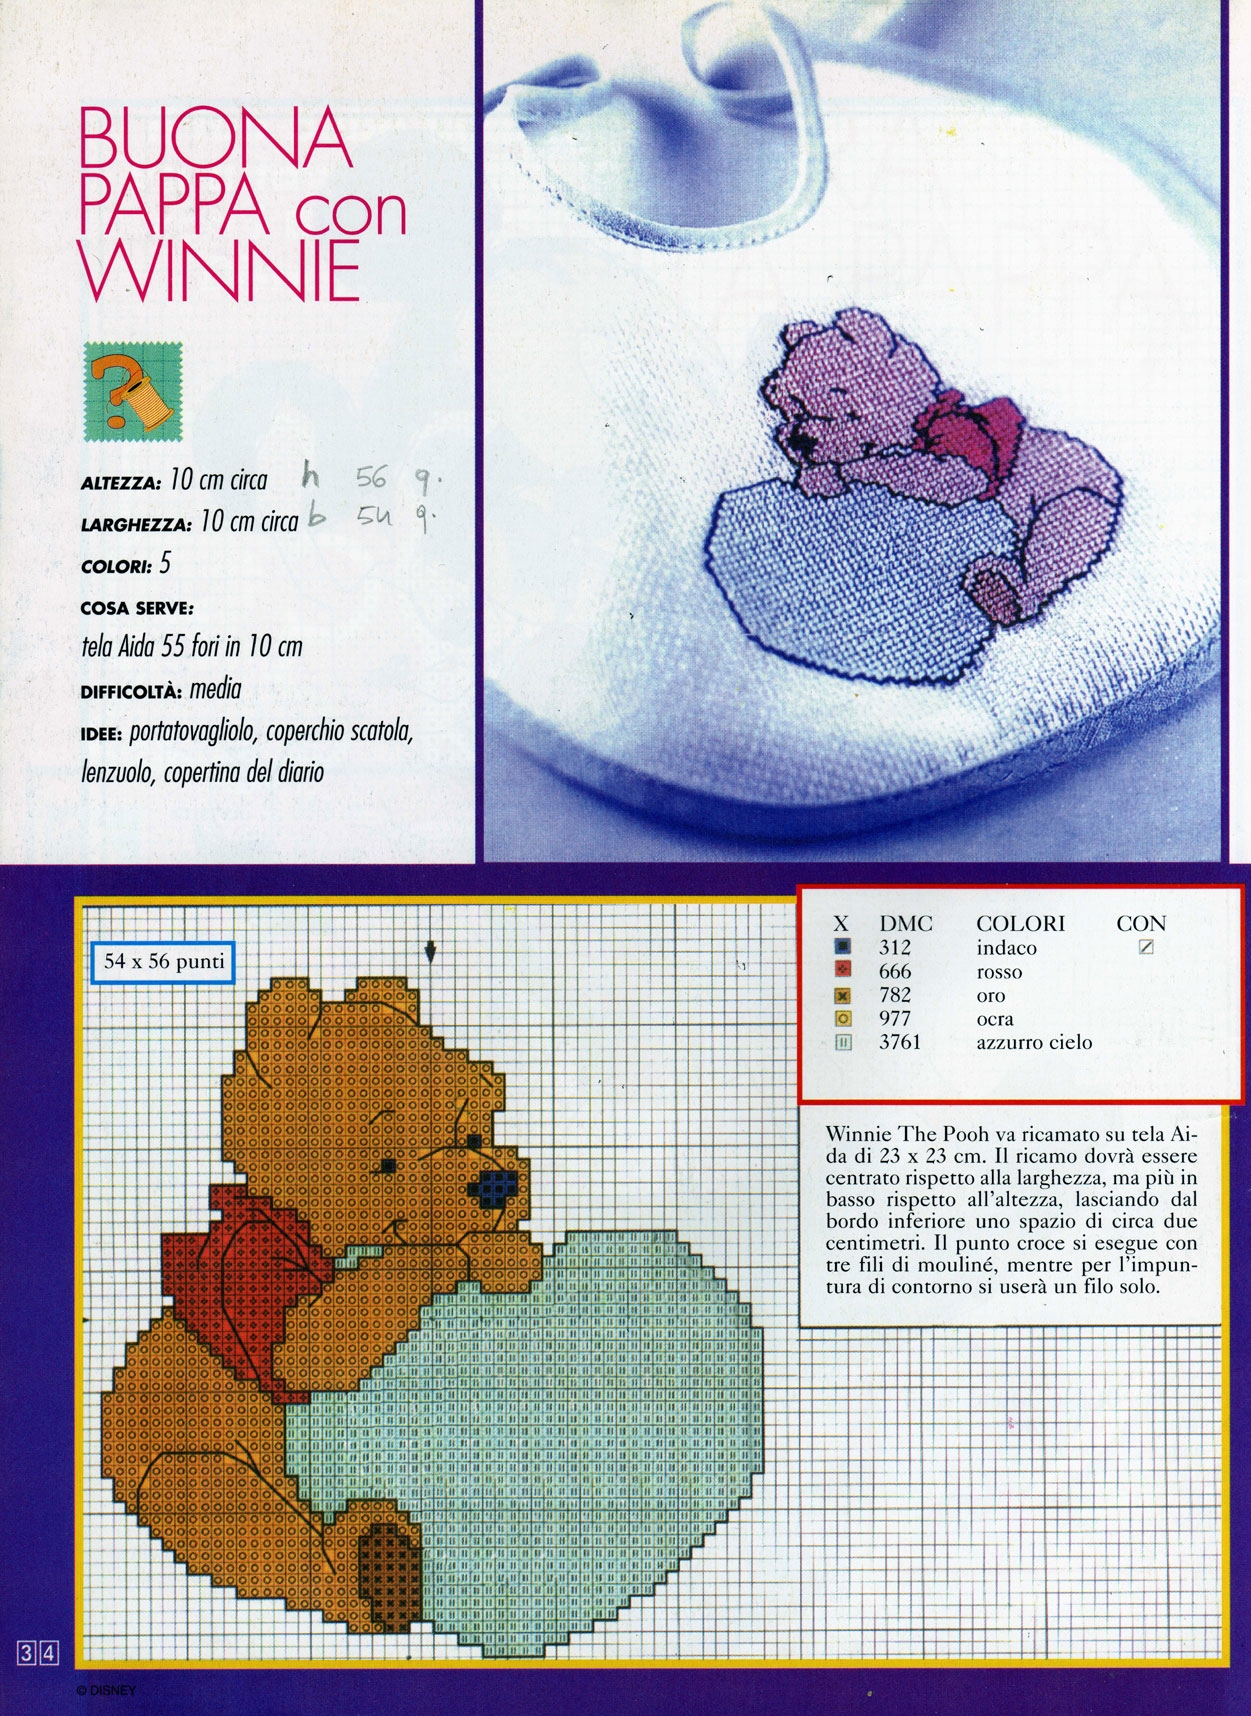 Cross stitch baby bib with Winnie The Pooh